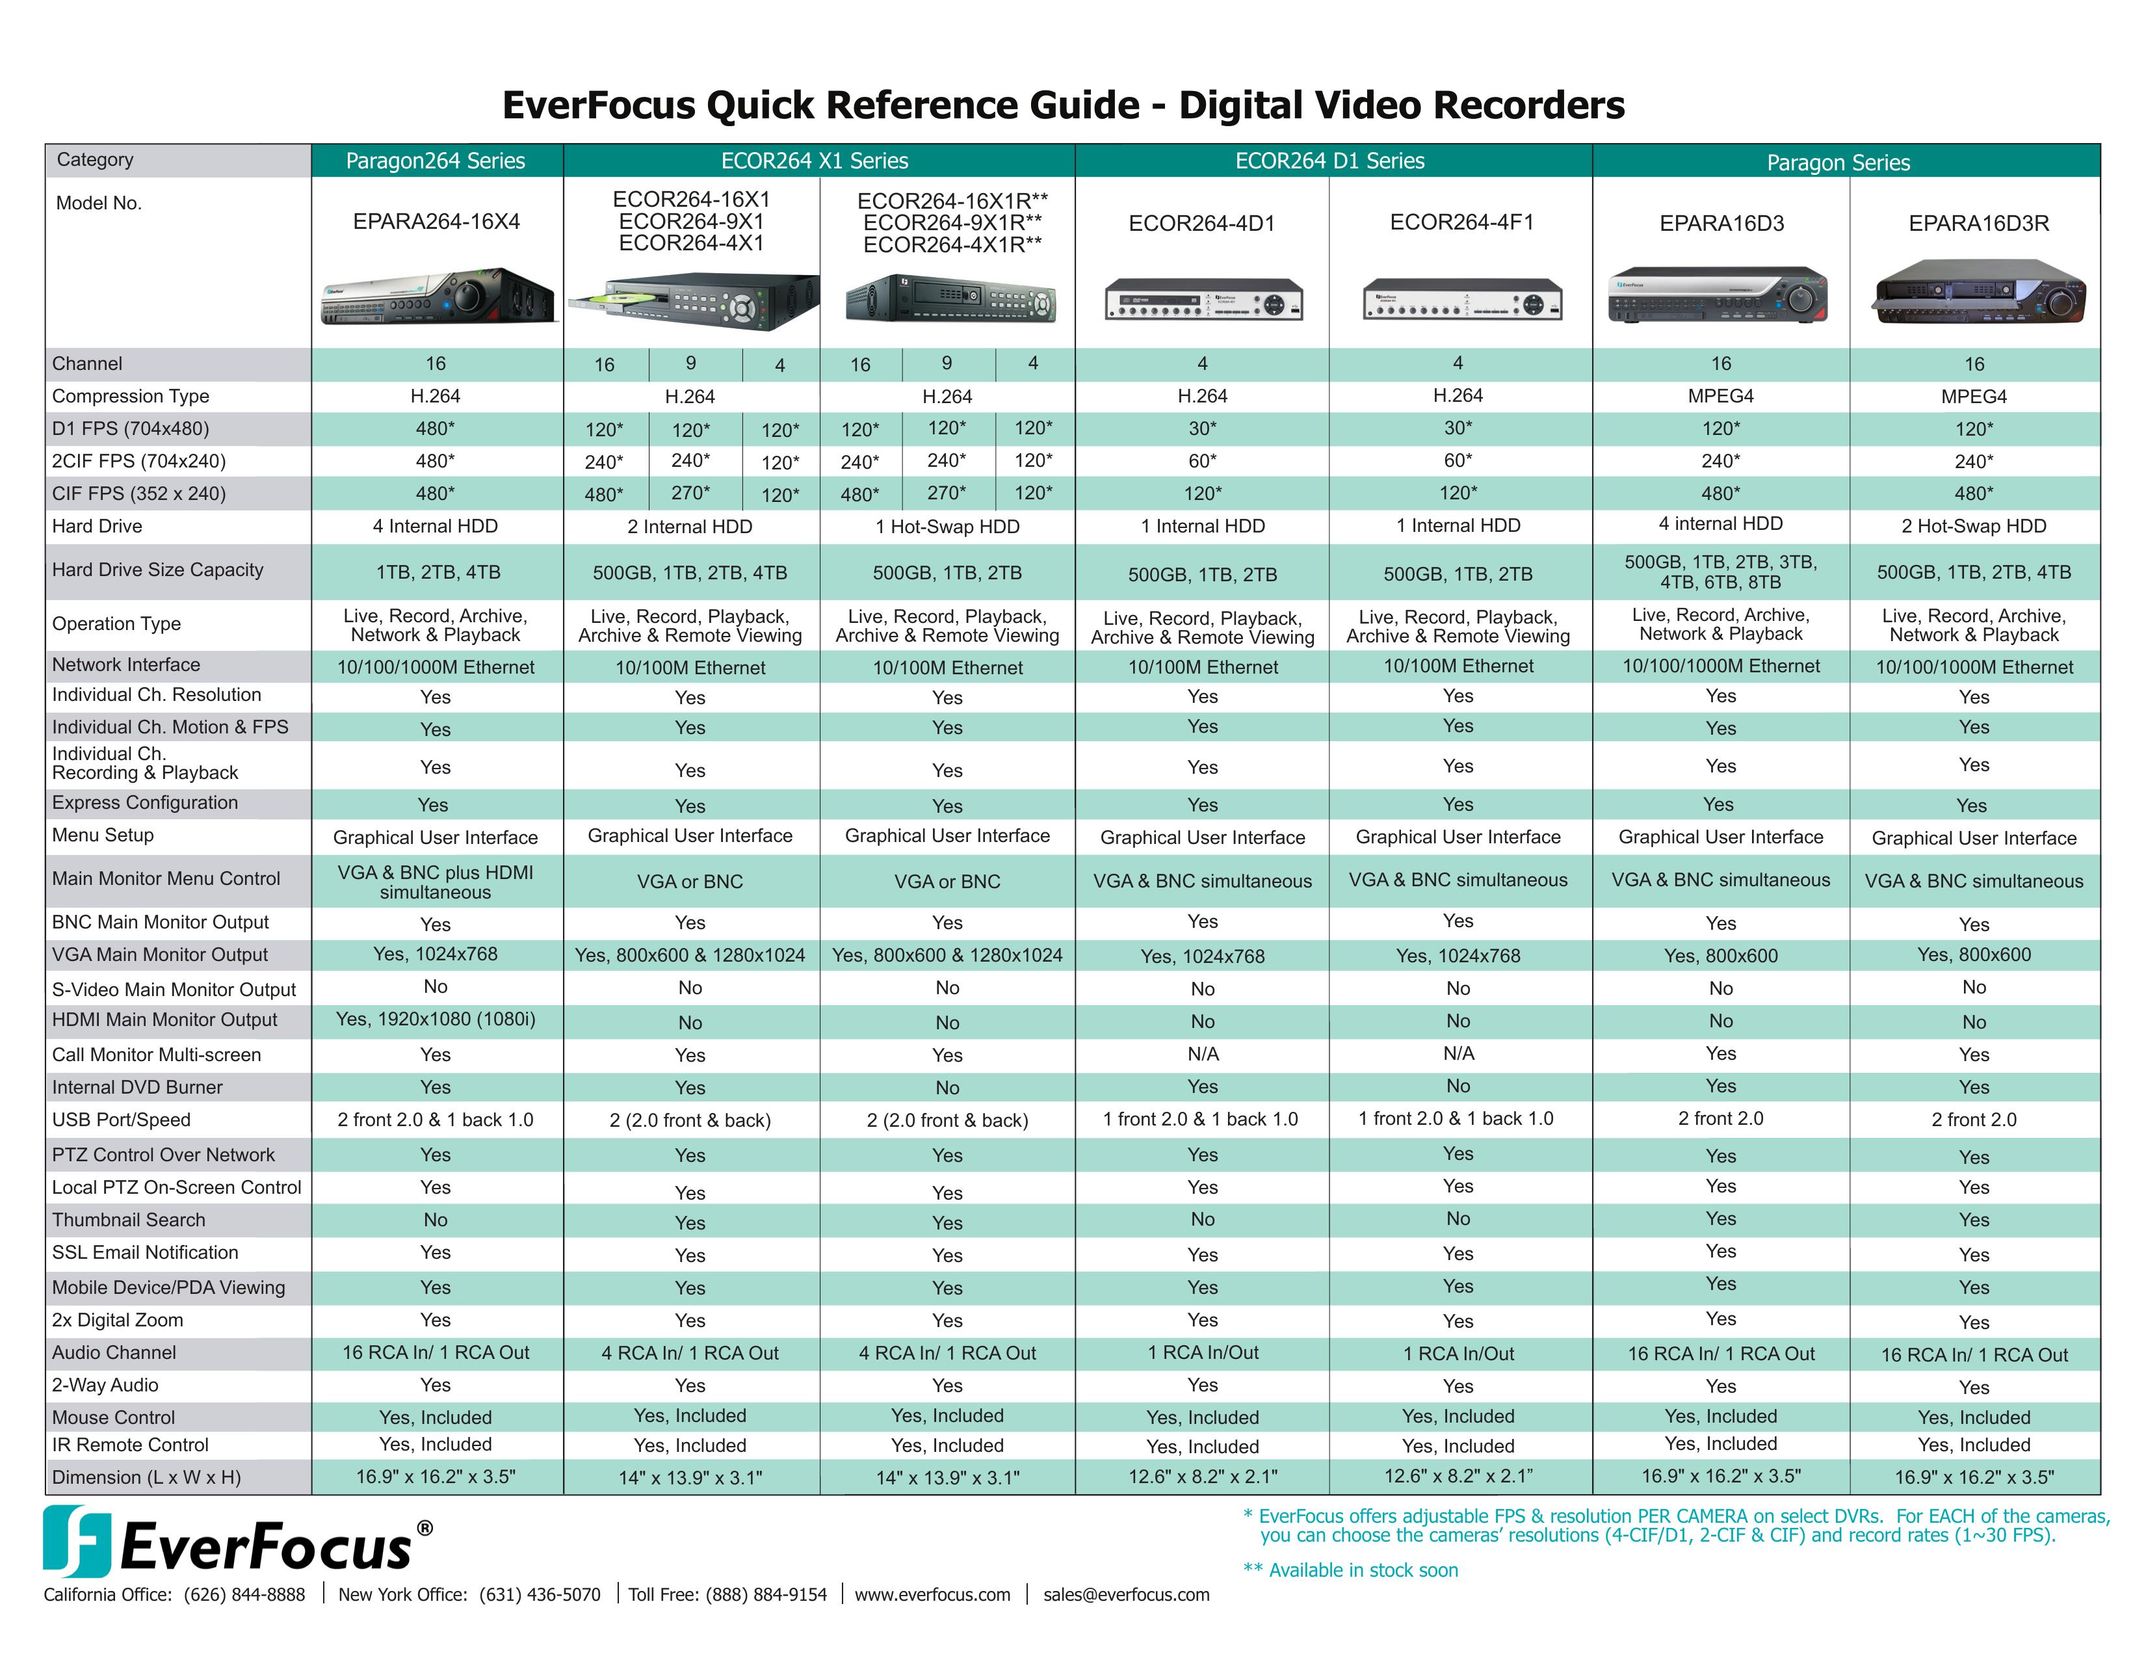 EverFocus ECOR264-4F1 DVR User Manual